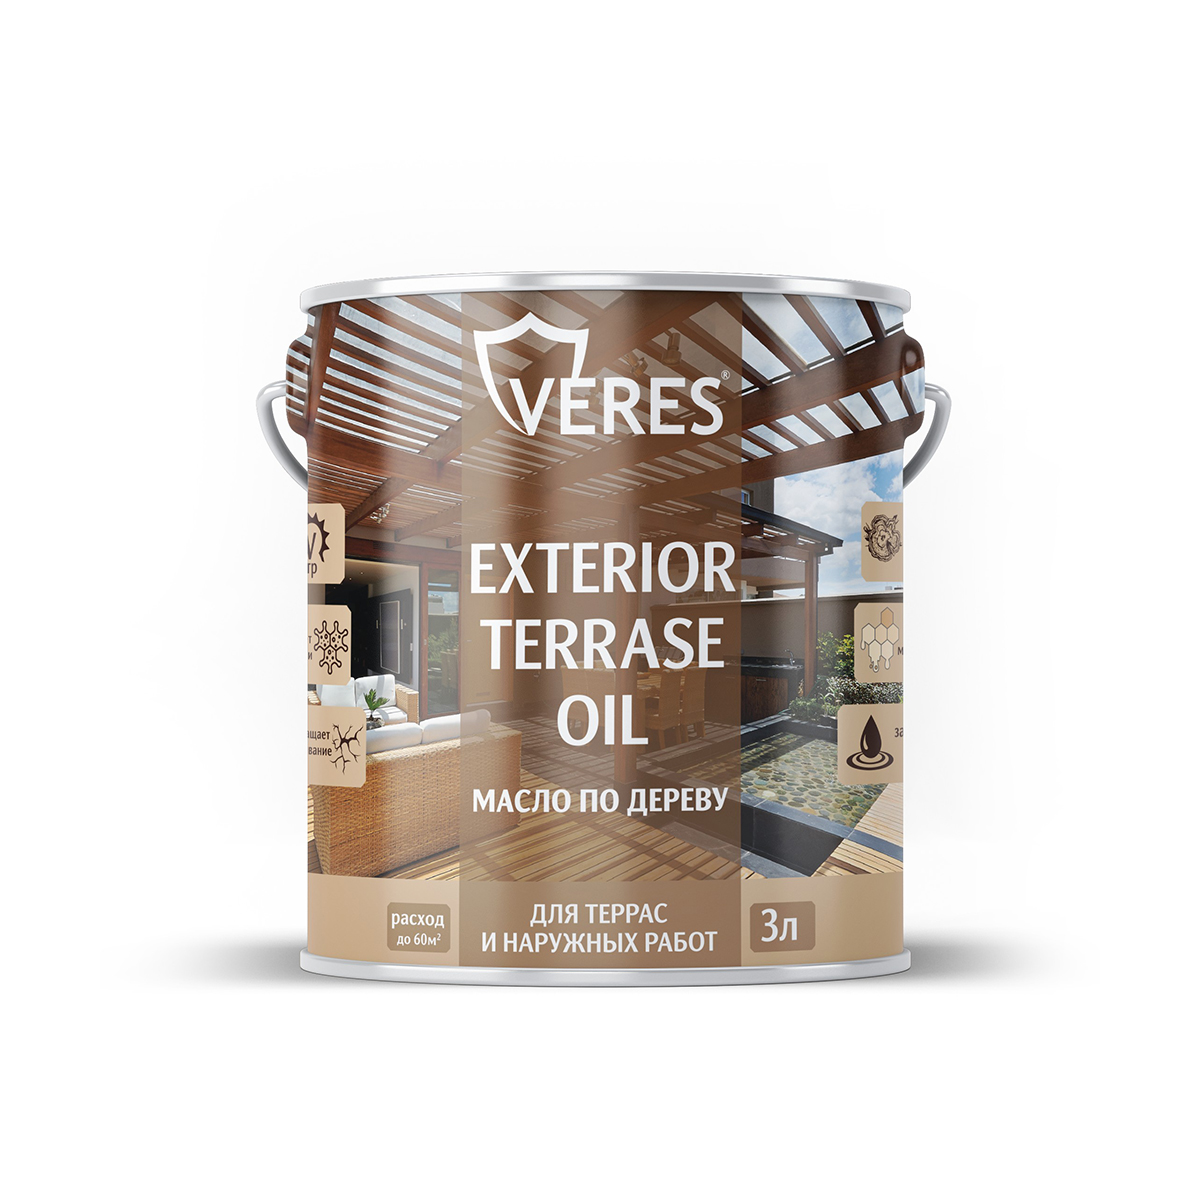 Масло для дерева Veres Exterior Terrase Oil, 3 л, дуб - купить в Москве, цены на Мегамаркет